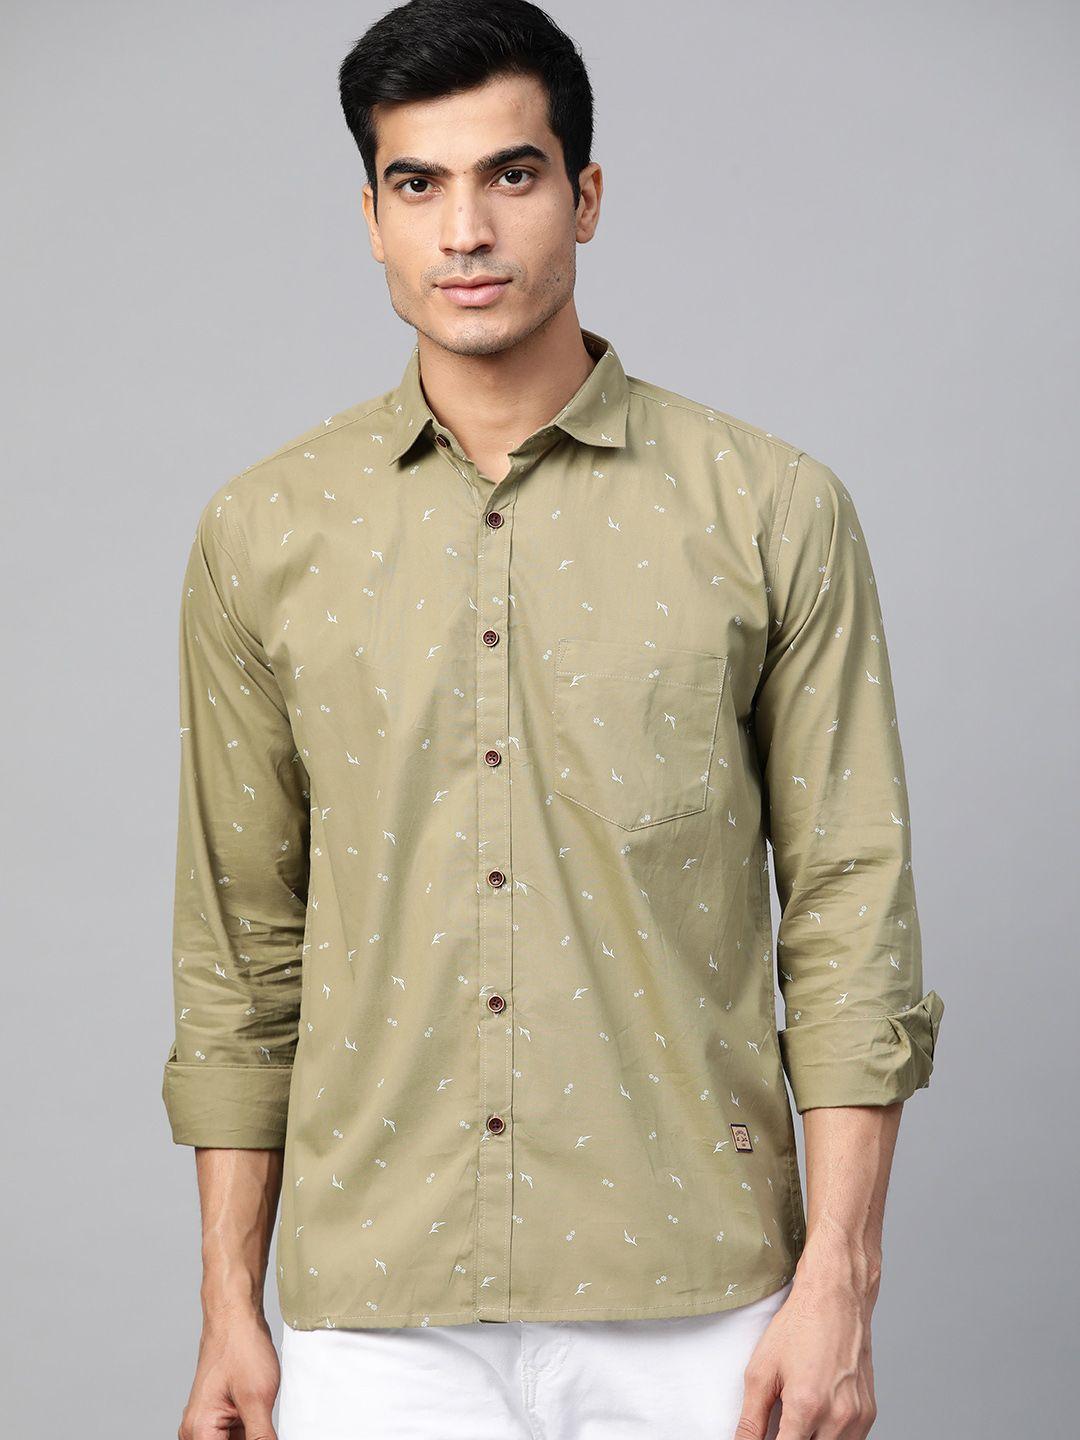 dennison men olive green comfort slim fit ditsy floral print casual shirt